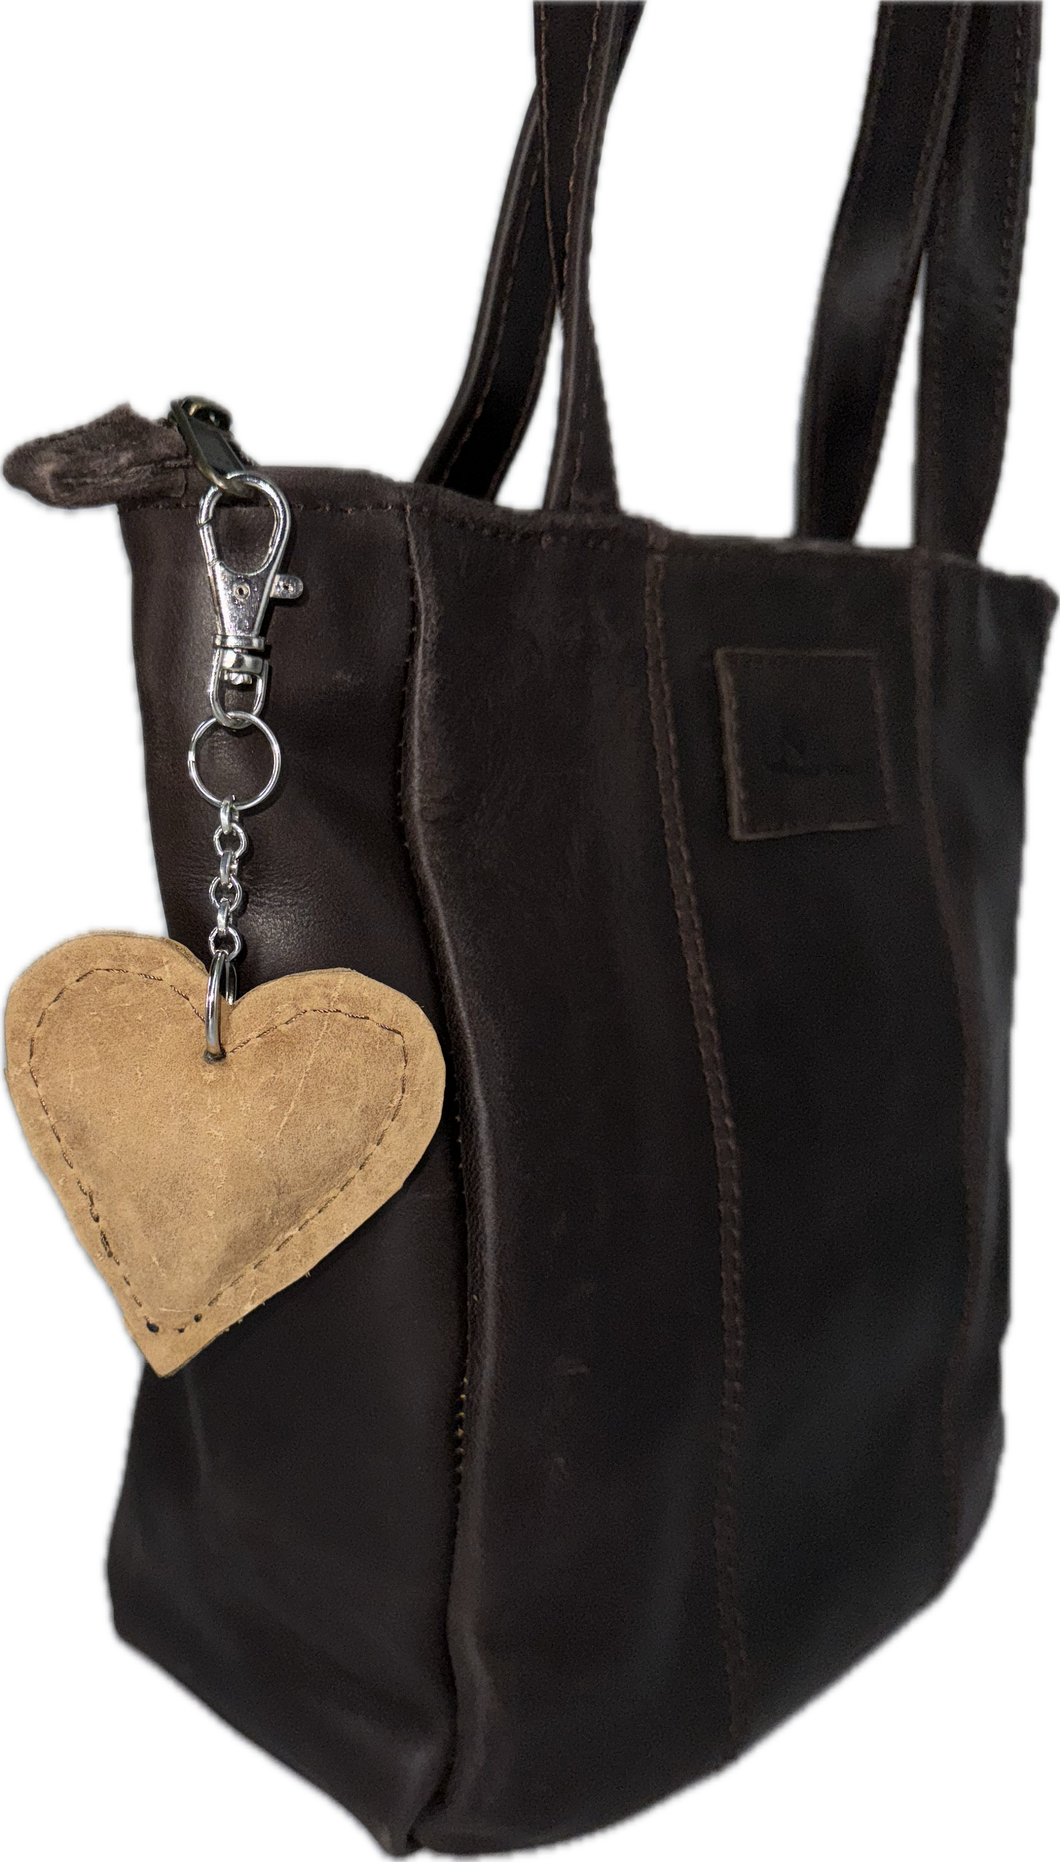 Heart Key Chain / Bag Accessory - Matt Light Brown